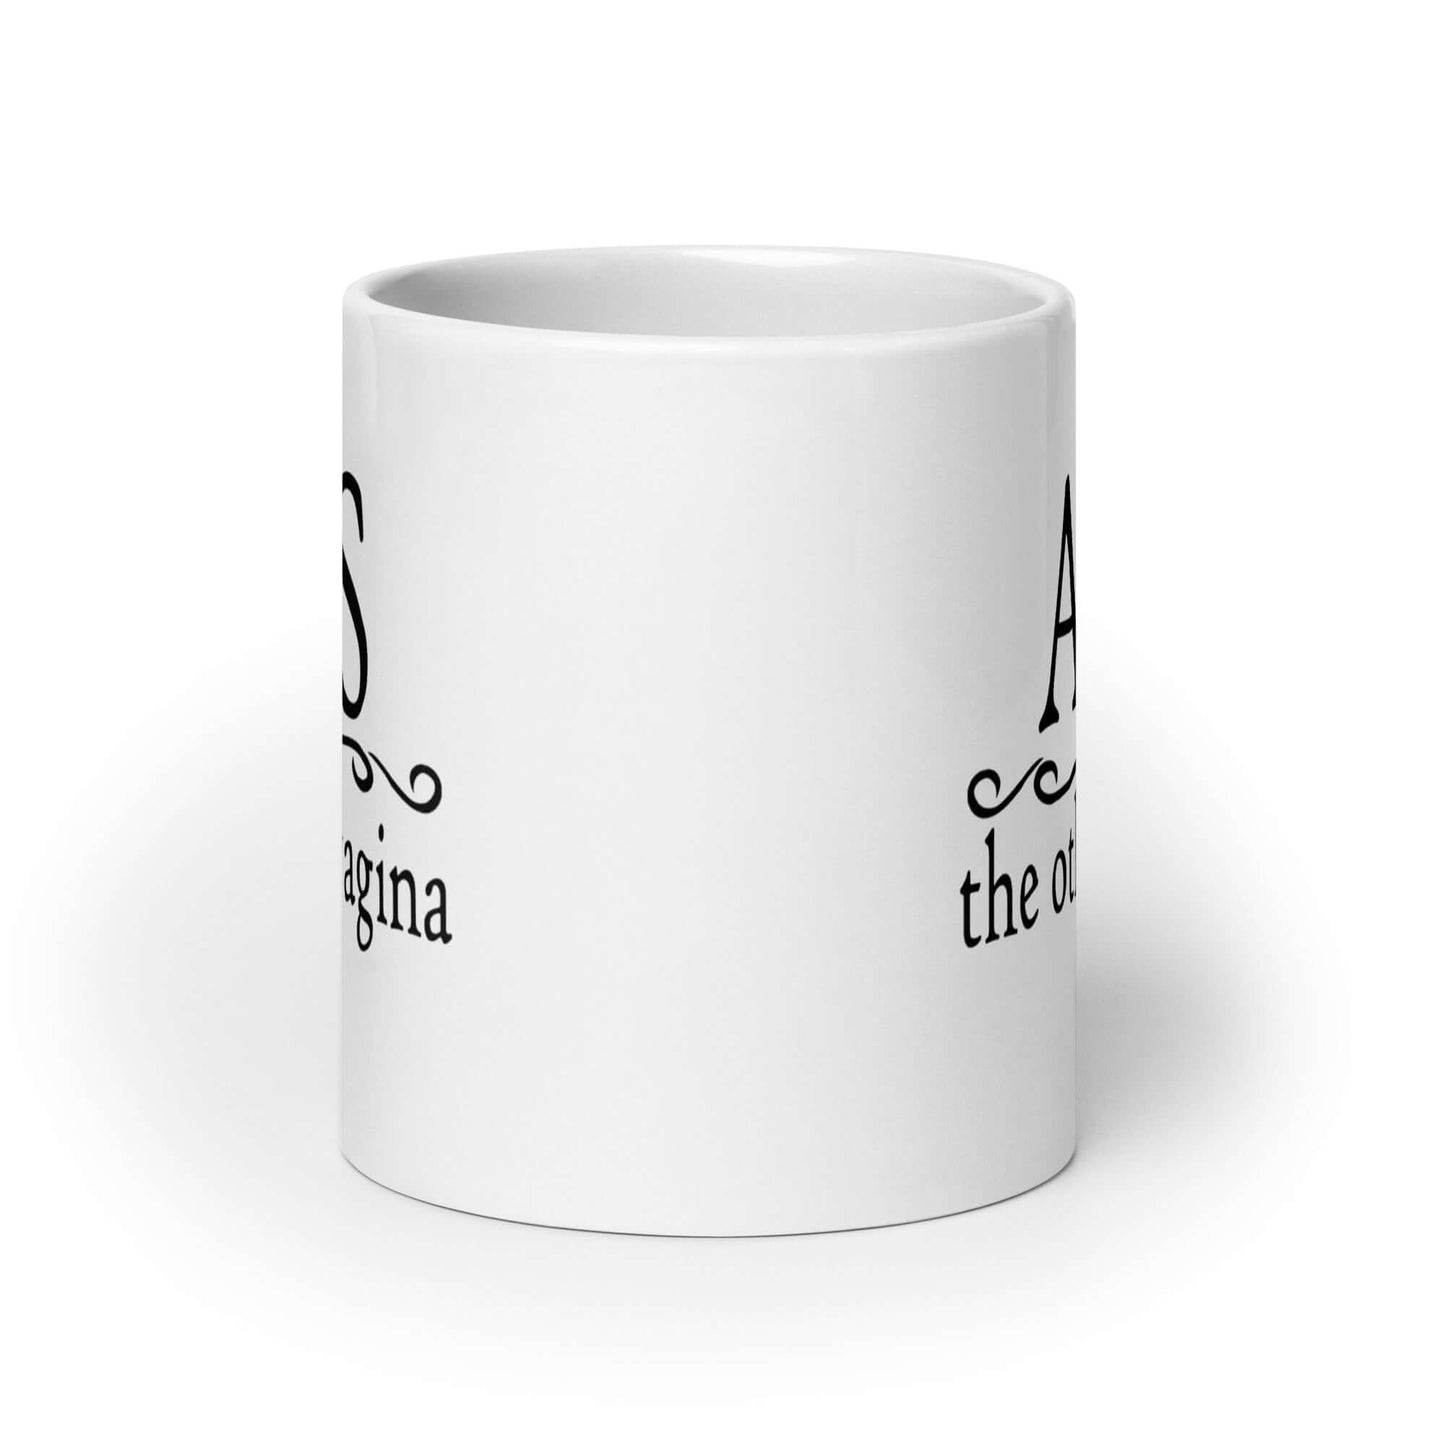 side view of coffee mug